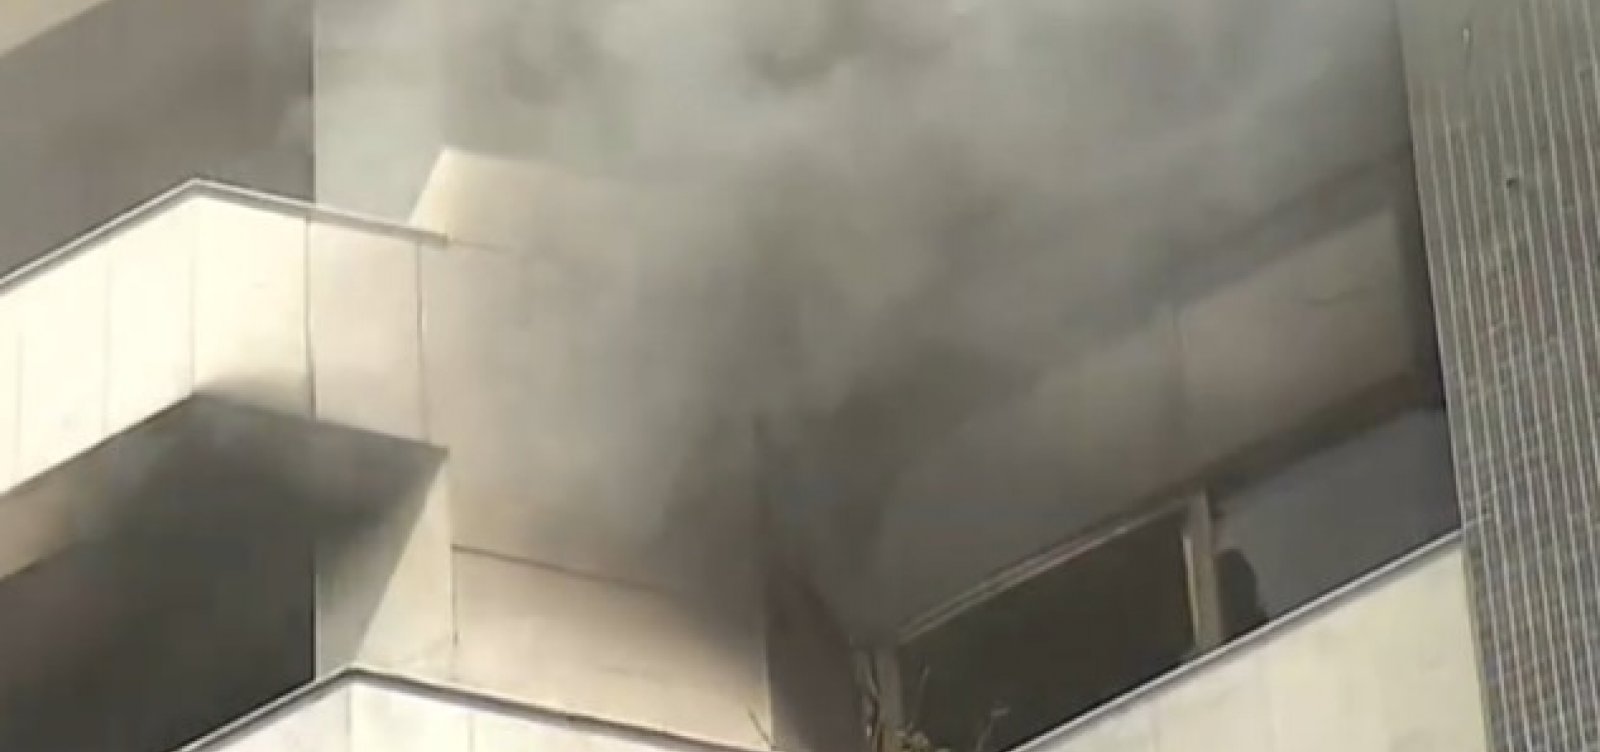 Incêndio em apartamento na Barra deixa duas mulheres feridas; veja vídeo